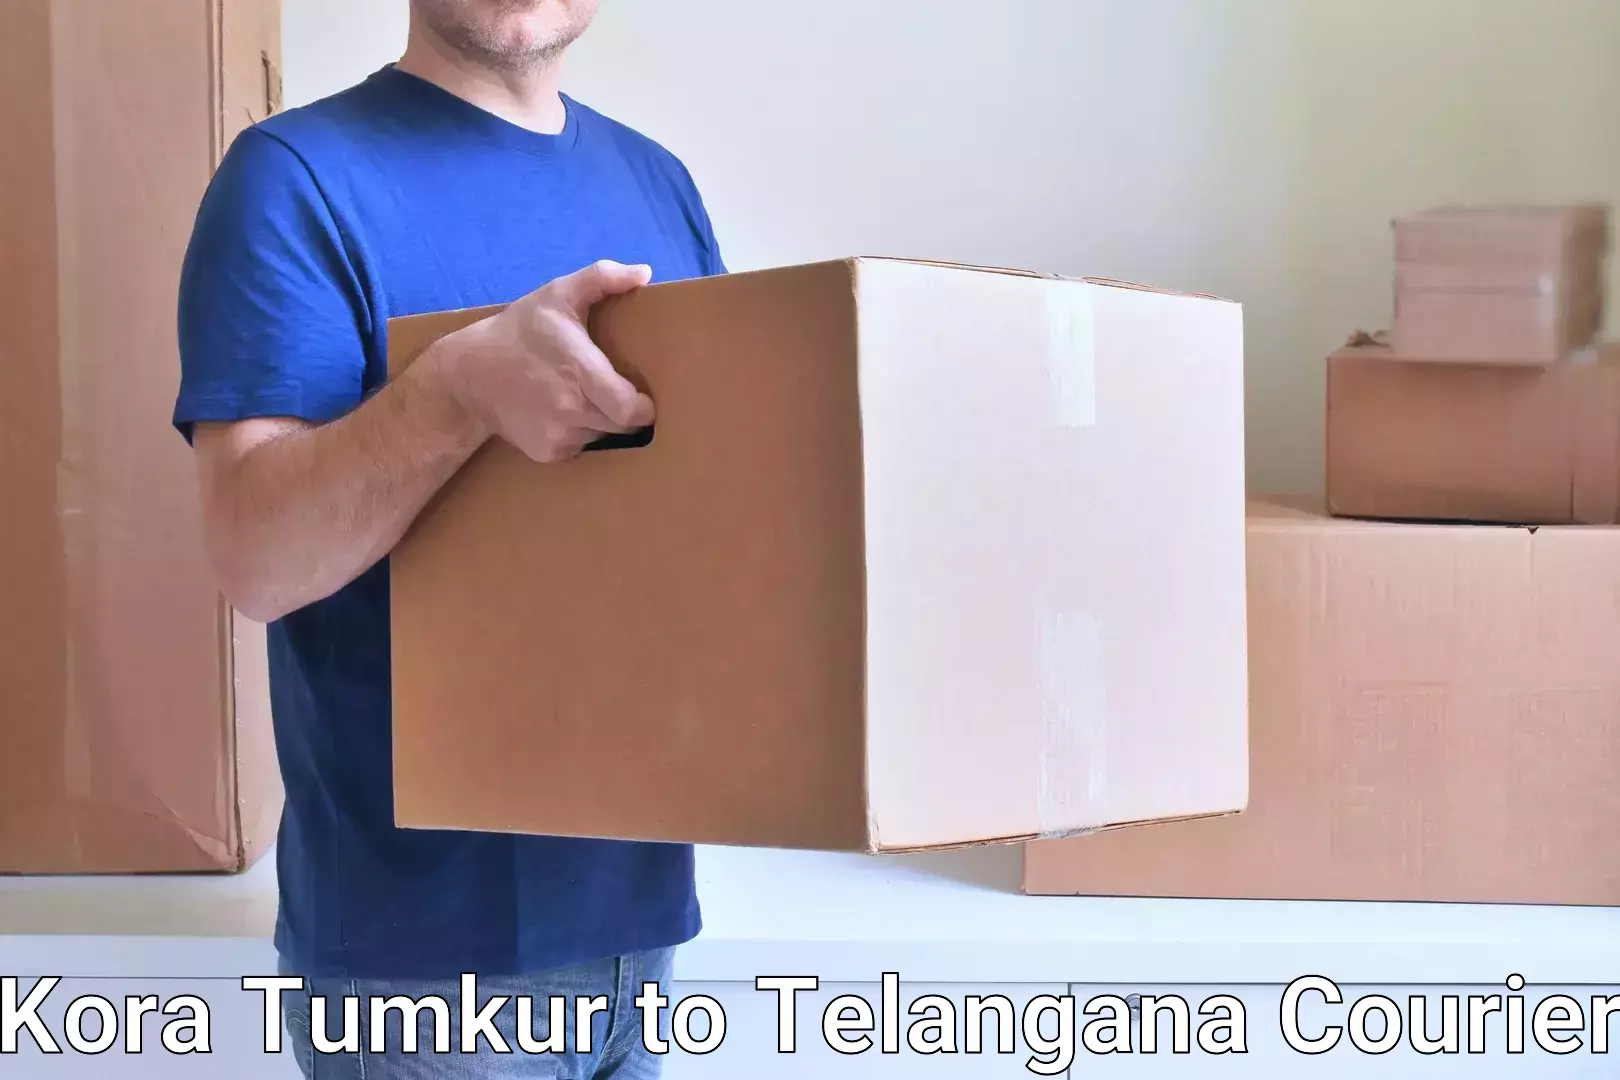 Flexible courier rates Kora Tumkur to Wyra